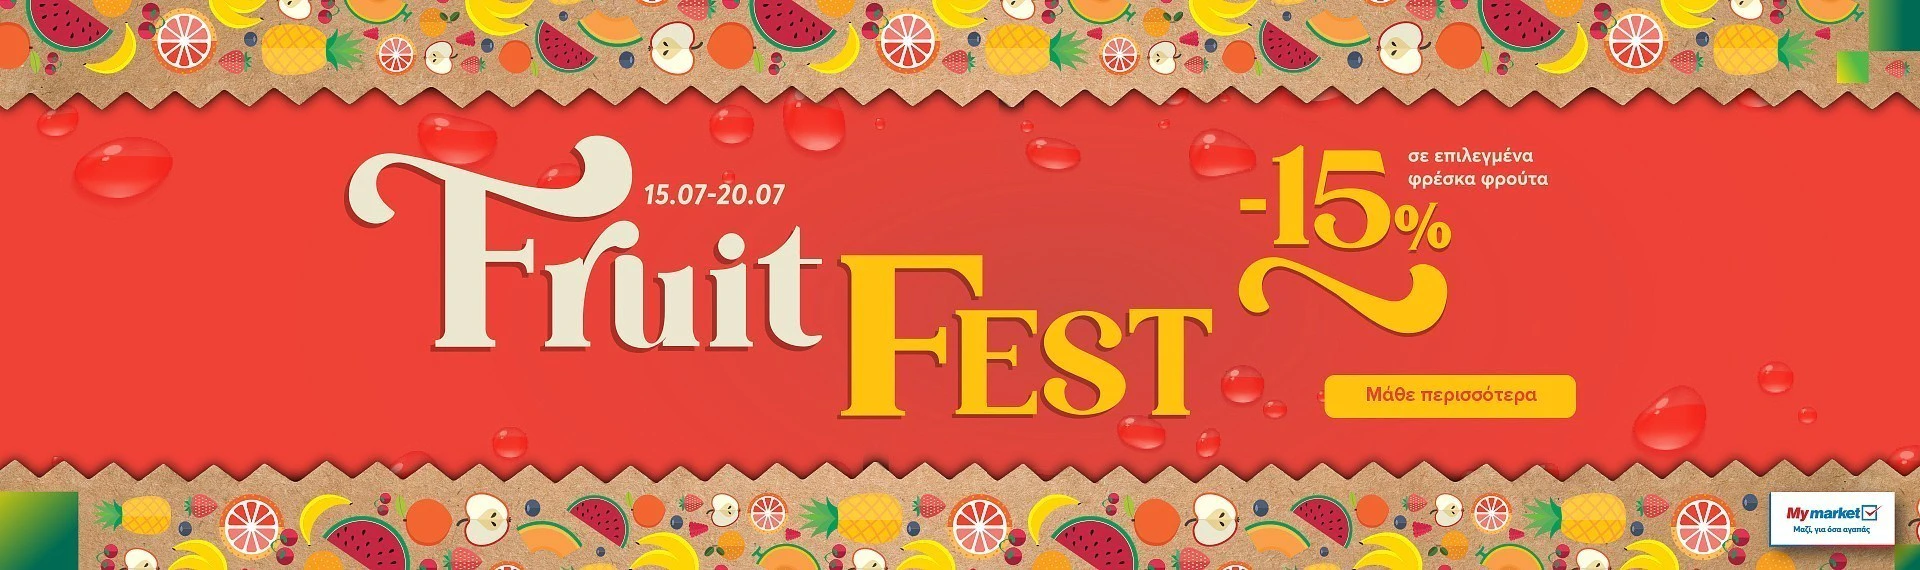 fruit fest brand pro 13.24 frouta (15/7-20/7) front desktop